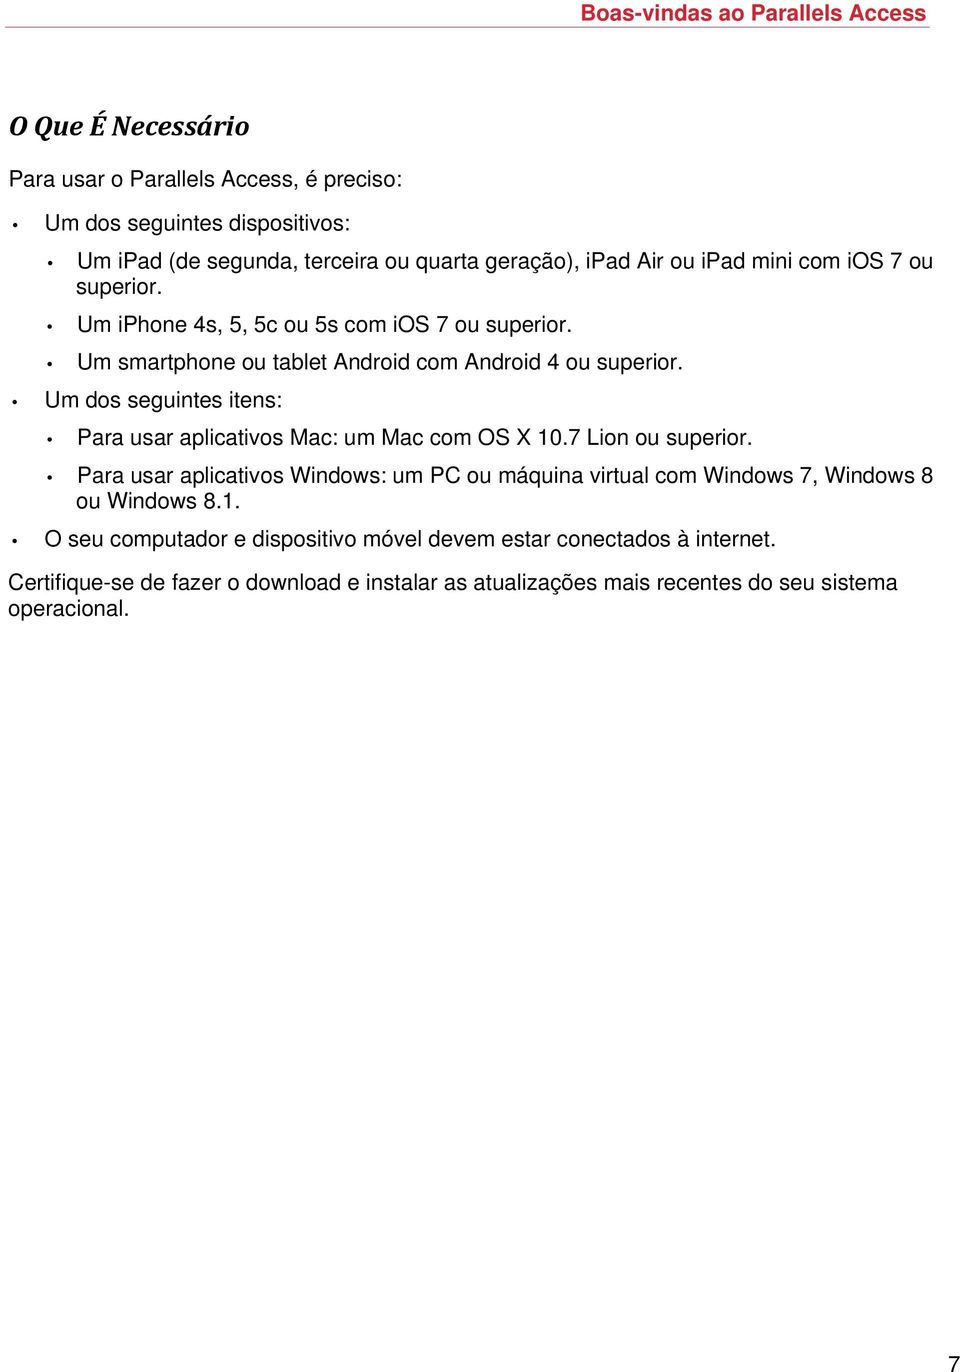 Um dos seguintes itens: Para usar aplicativos Mac: um Mac com OS X 10.7 Lion ou superior.